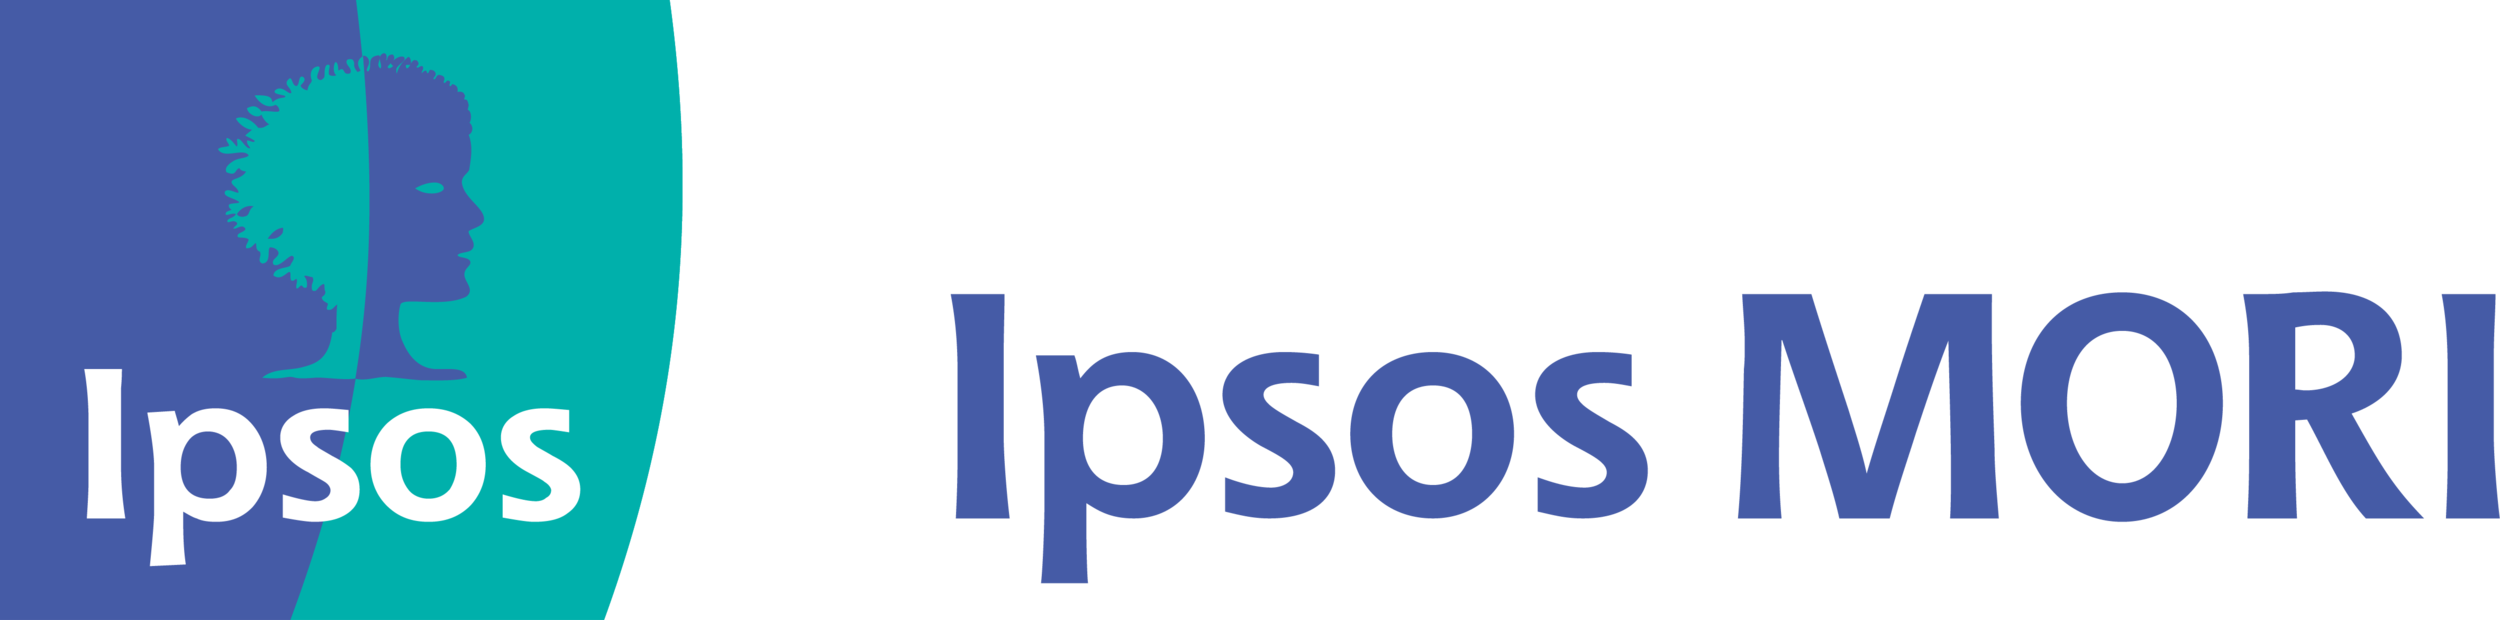 ipsos_mori_logo_blue.png